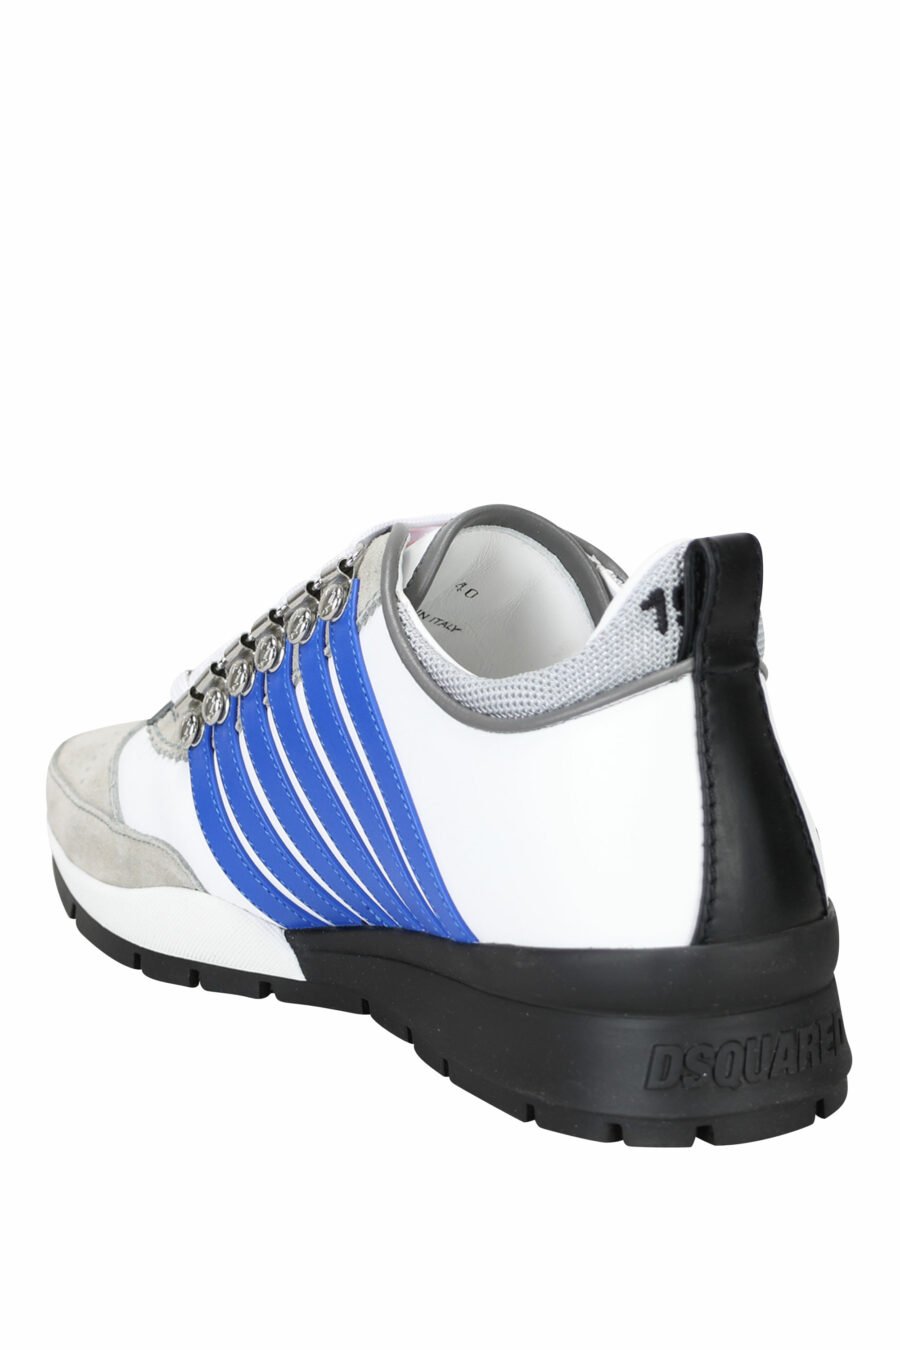 Zapatillas blancas con mix en gris, líneas azules y detalles en negro - 8055777244326 3